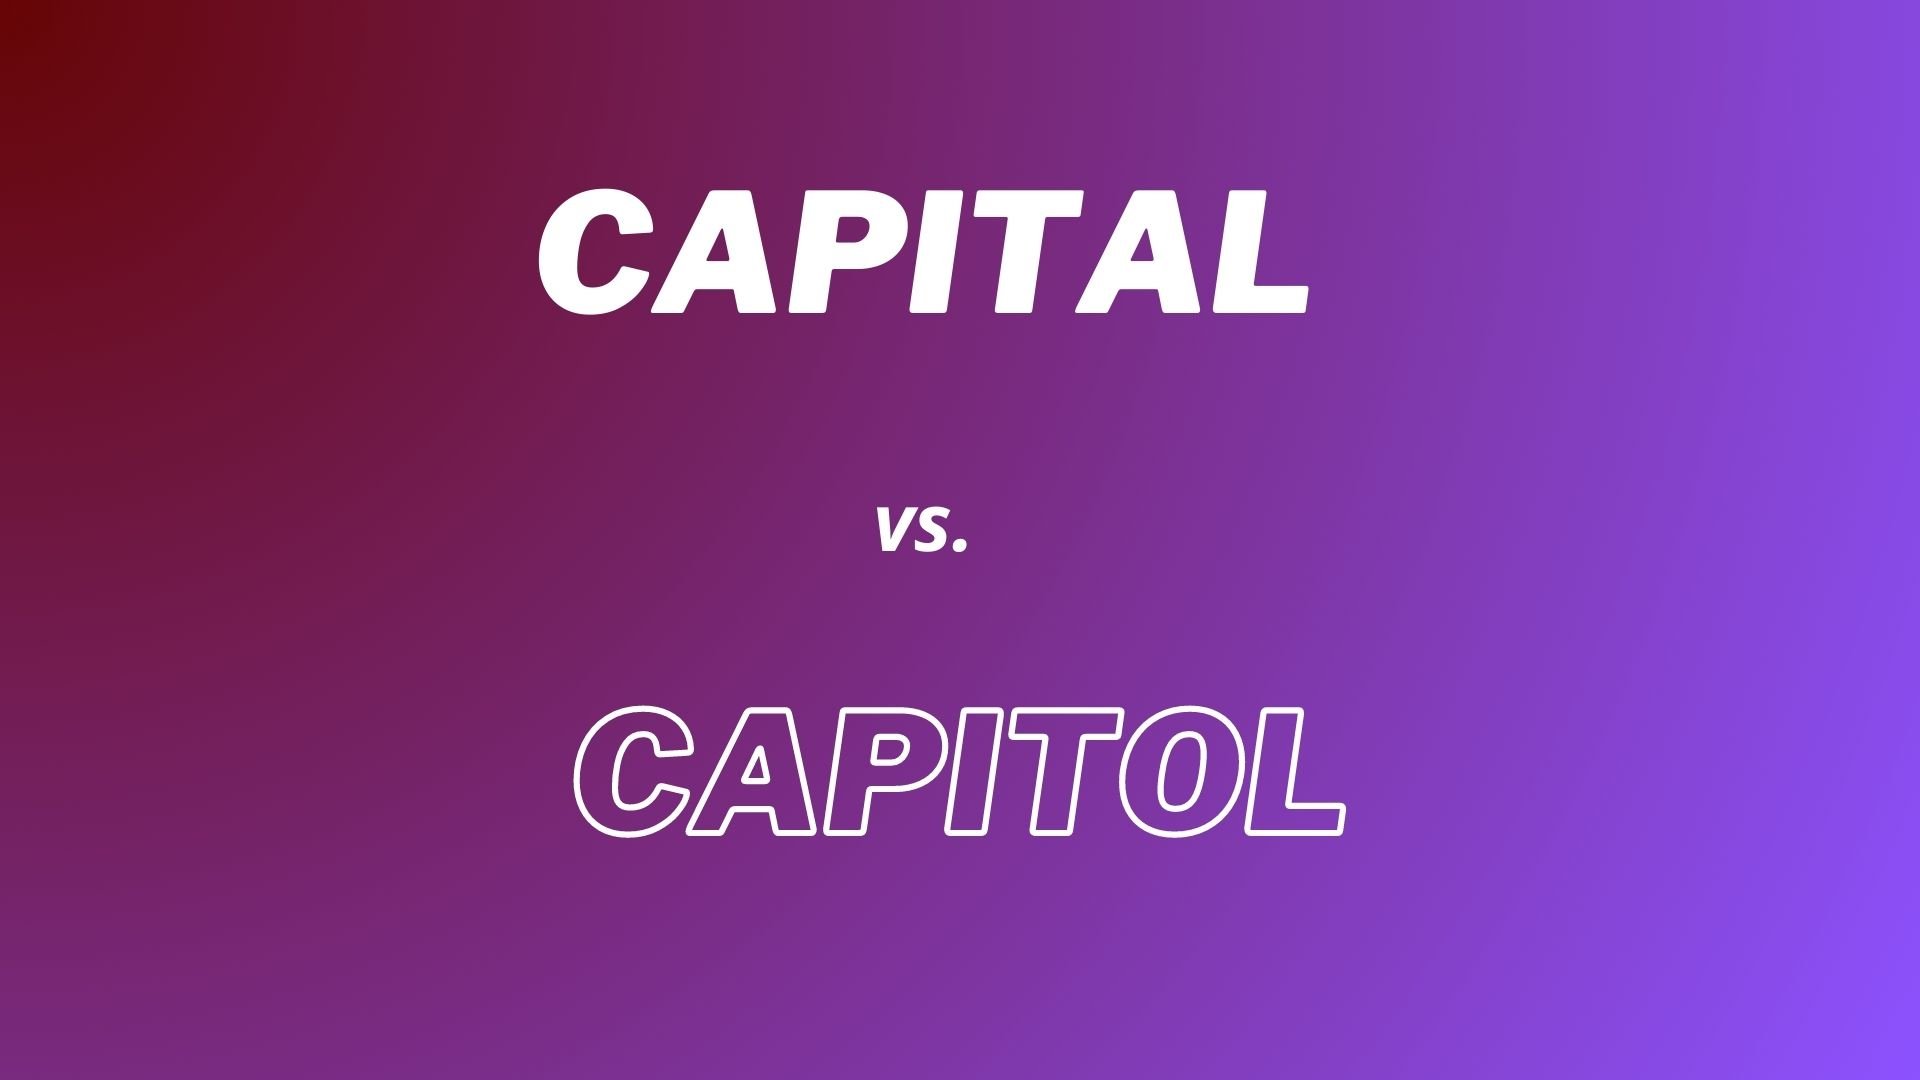 Wyjaśnienie różnicy pomiędzy słowami "Capital"  i "Capitol"